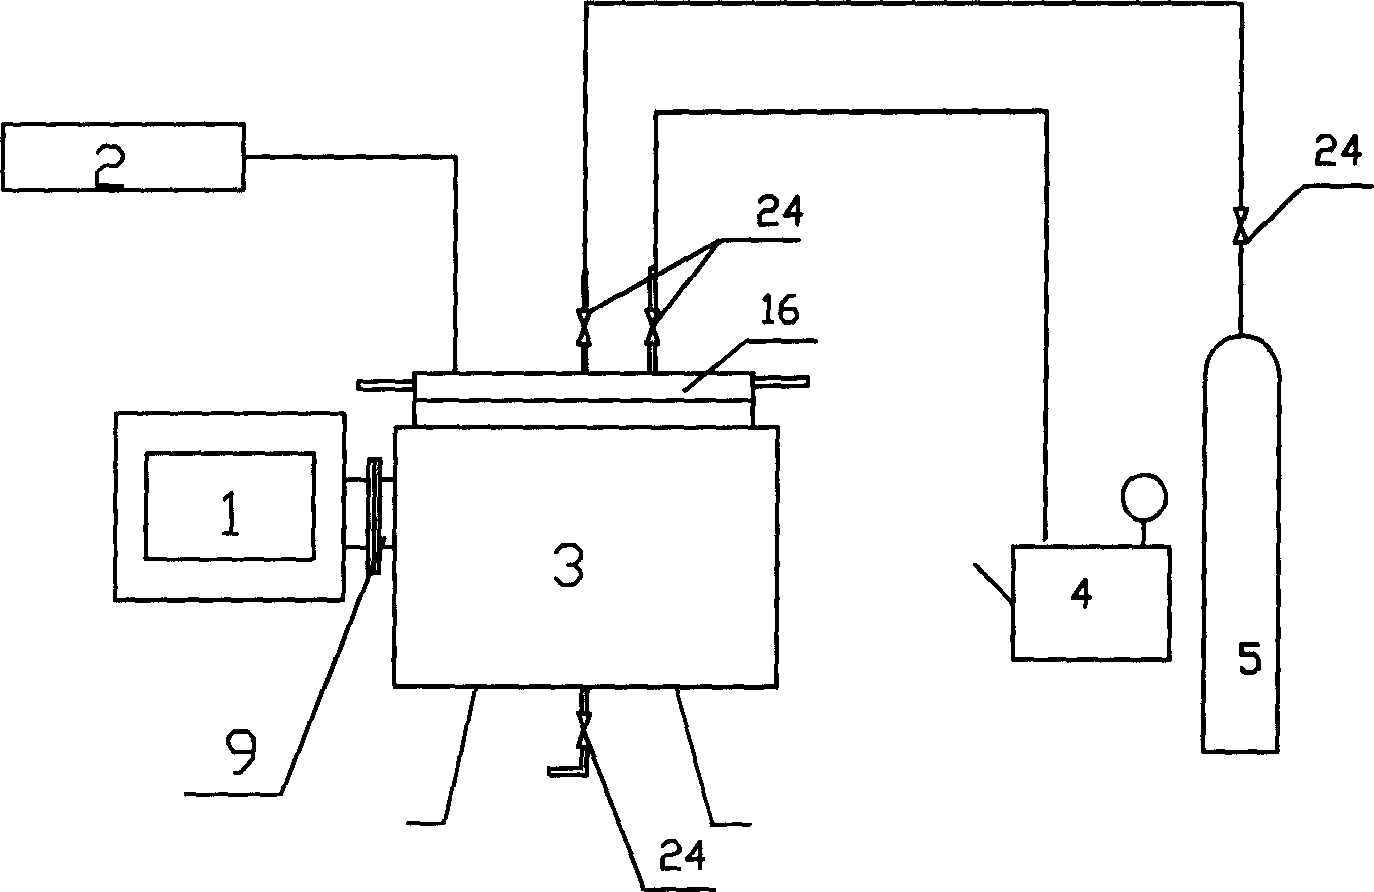 Pressure type microwave reactor